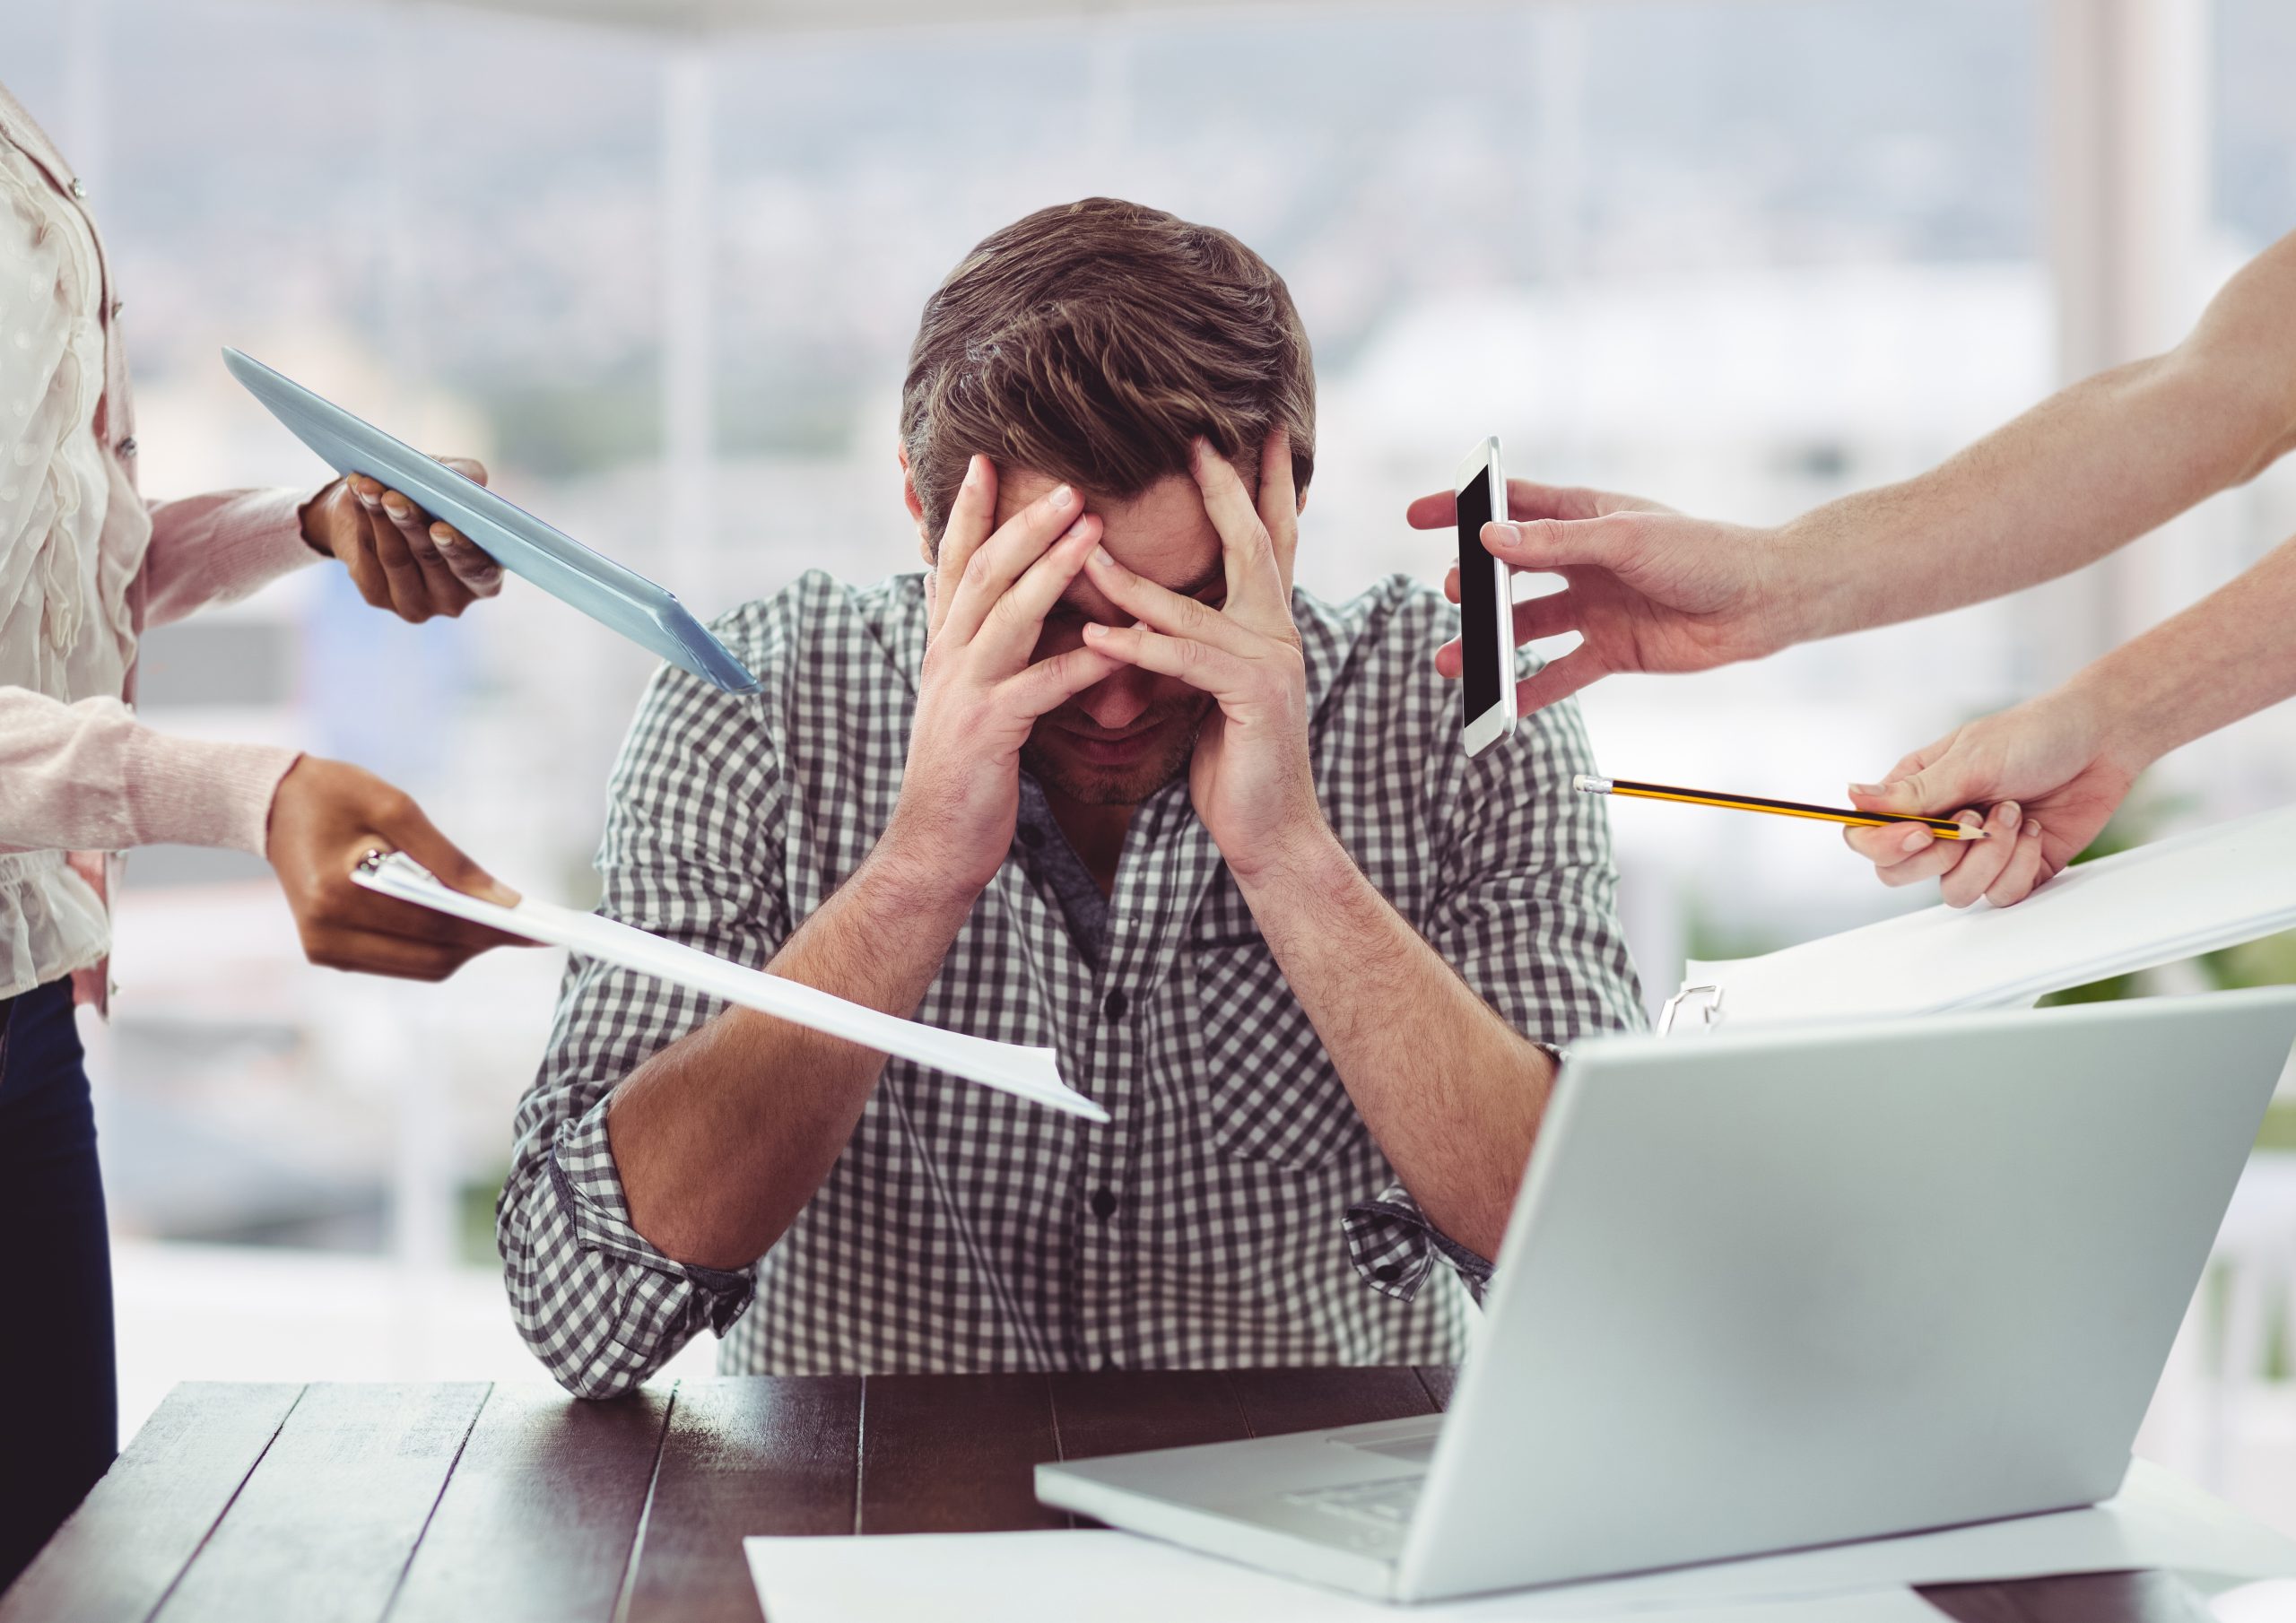 İşverenler Buraya: Tükenmişlik “Burn Out” Sendromu Yaşayan Çalışanlarınıza Nasıl Destek Verebilirsiniz?